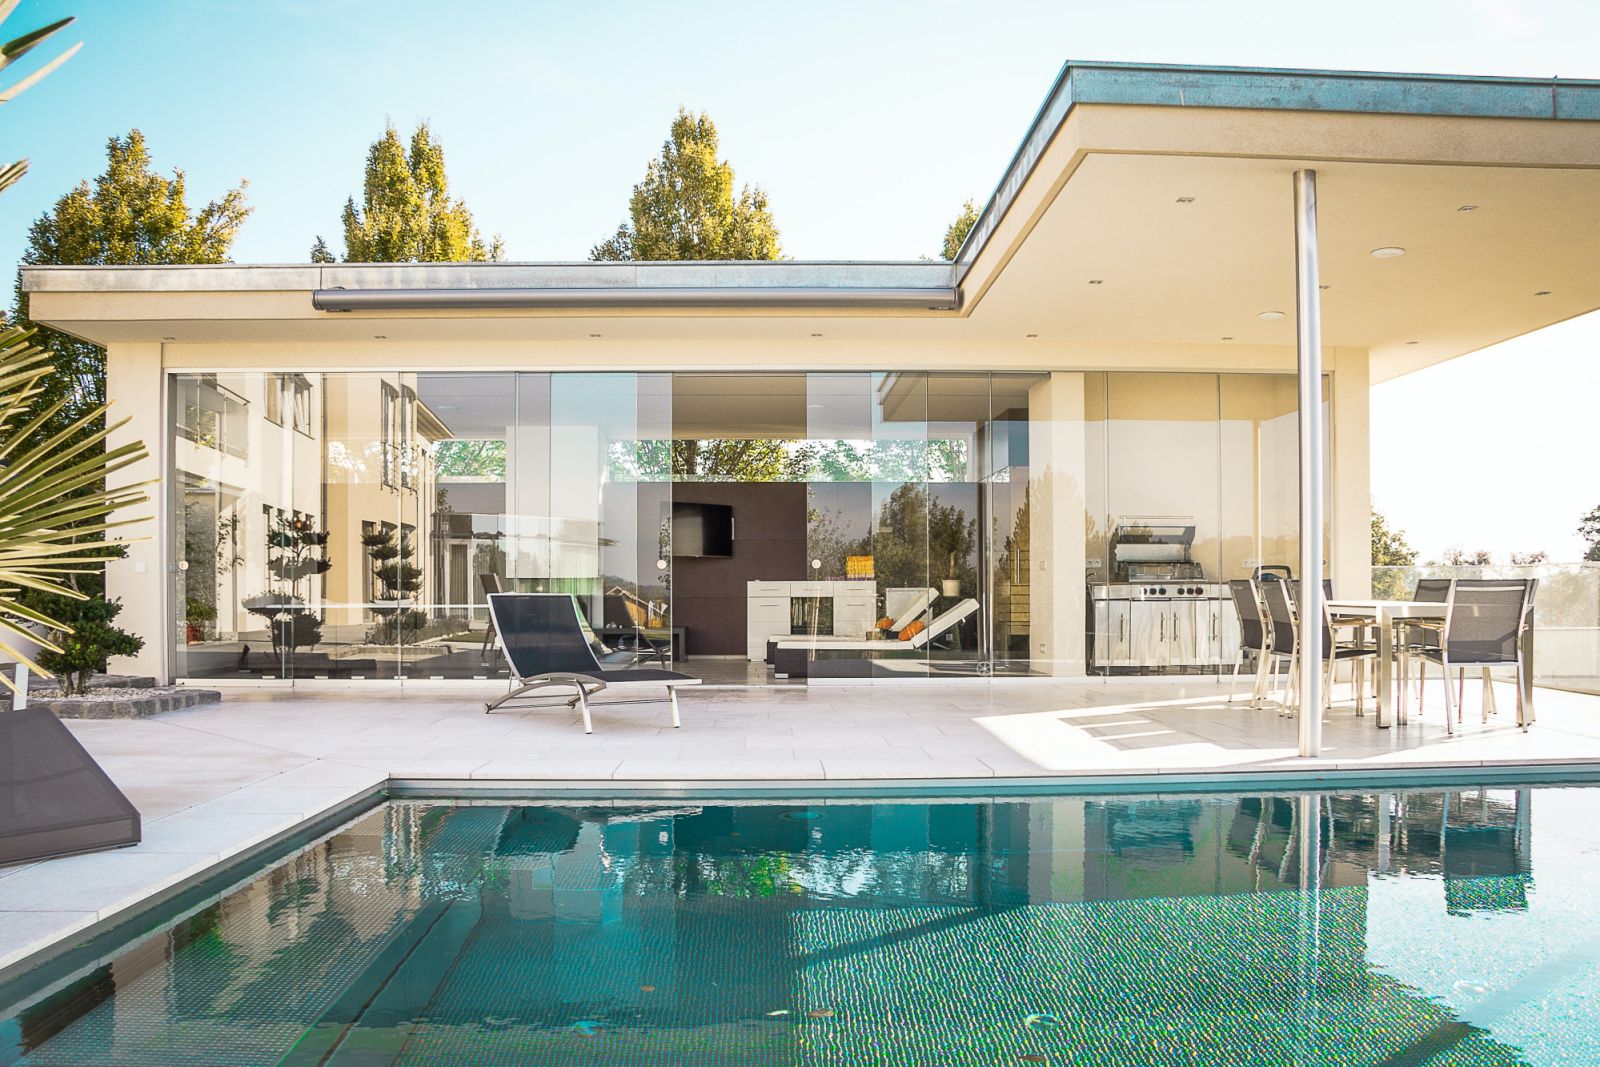 A pool is a key feature of luxury properties (Photo: Unsplash/@fensterschmidinger)